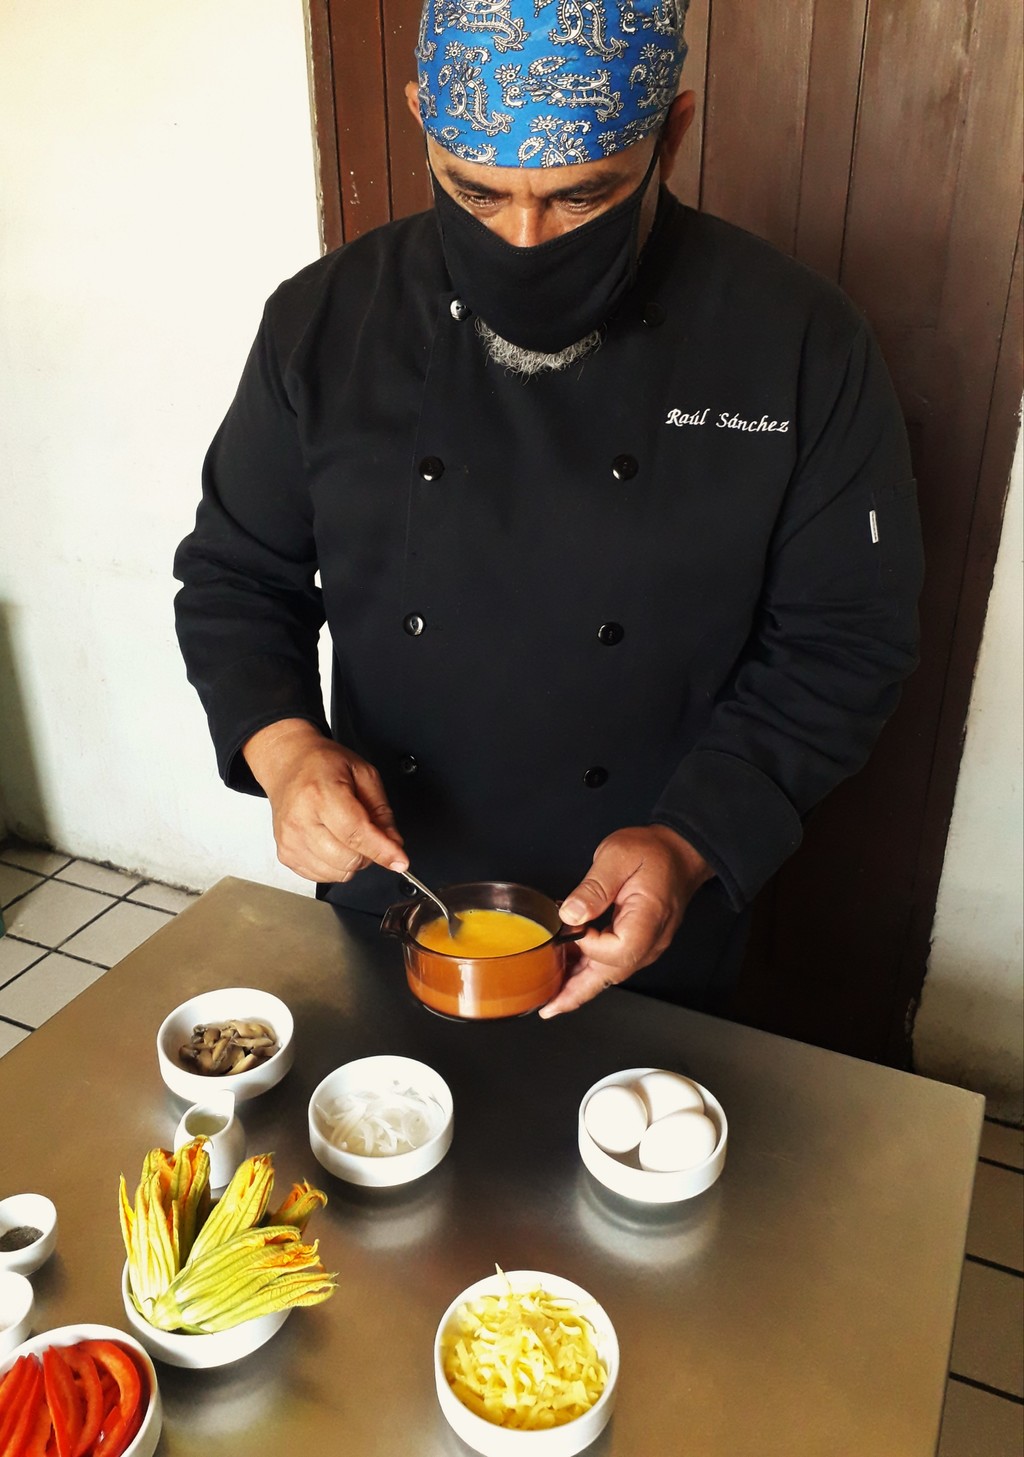 PREPARACIÓN. El chef Raúl Sánchez añade los huevos batidos a la receta. (ESPECIAL)